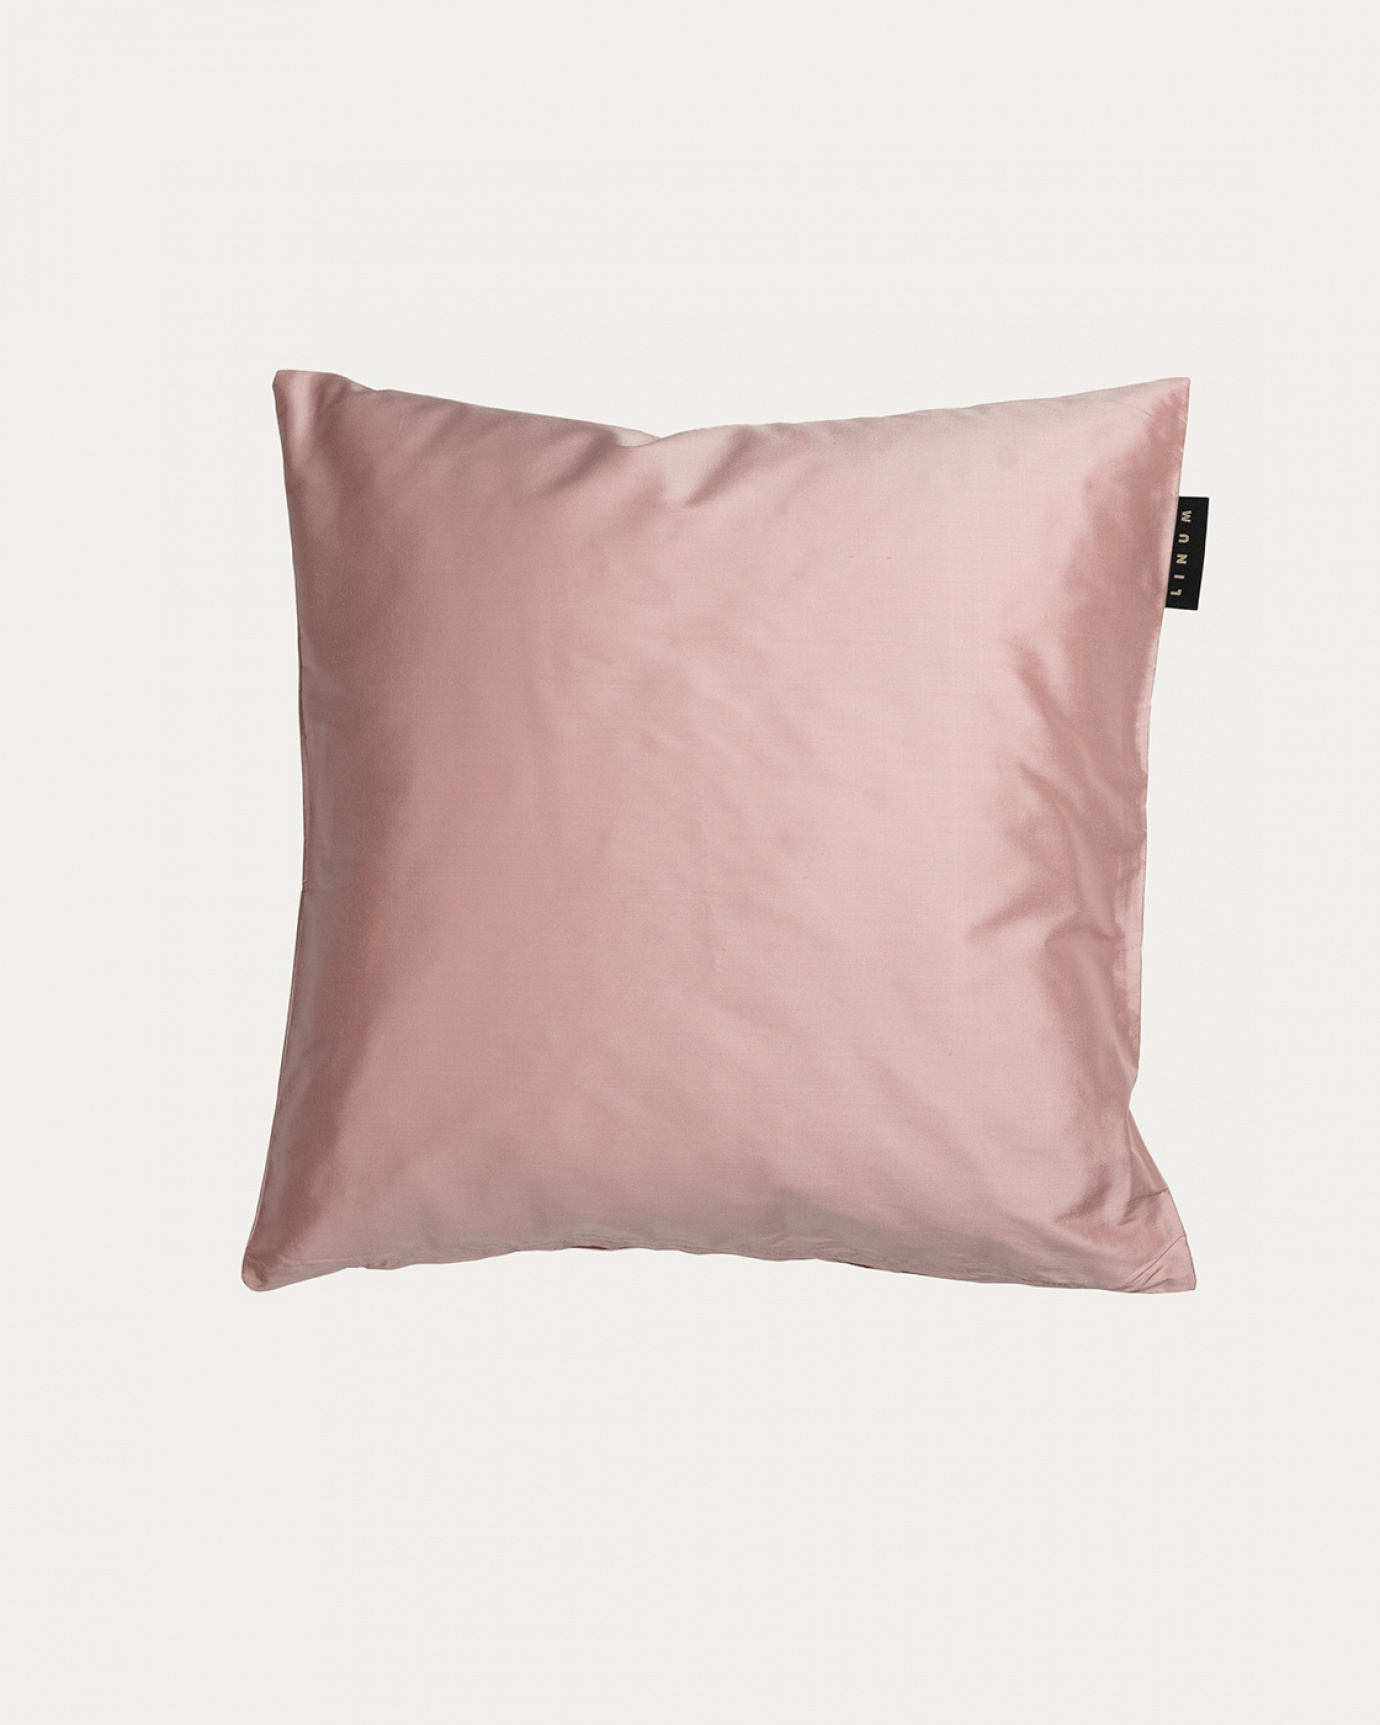 Immagine prodotto rosa antico SILK copricuscini realizzata in 100% seta dupion grezza che dona una bella lucentezza da LINUM DESIGN. Dimensioni 40x40 cm.